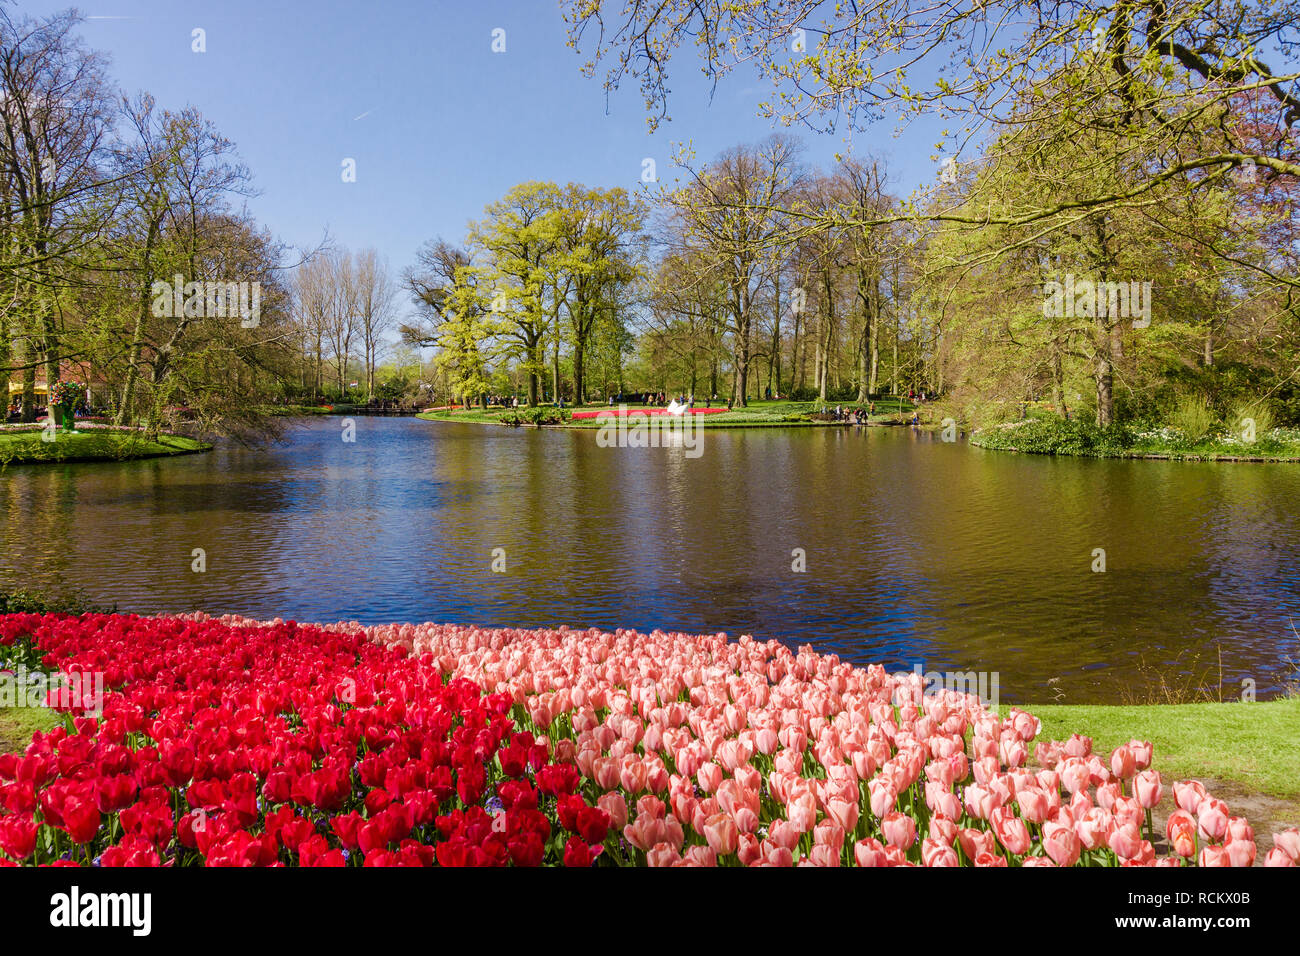 KEUKENHOF, LISSE, NETHERLANDS - April 18, 2016: Keukenhof park in Amsterdam area, Netherlands. Spring blossom in Keukenhof Stock Photo